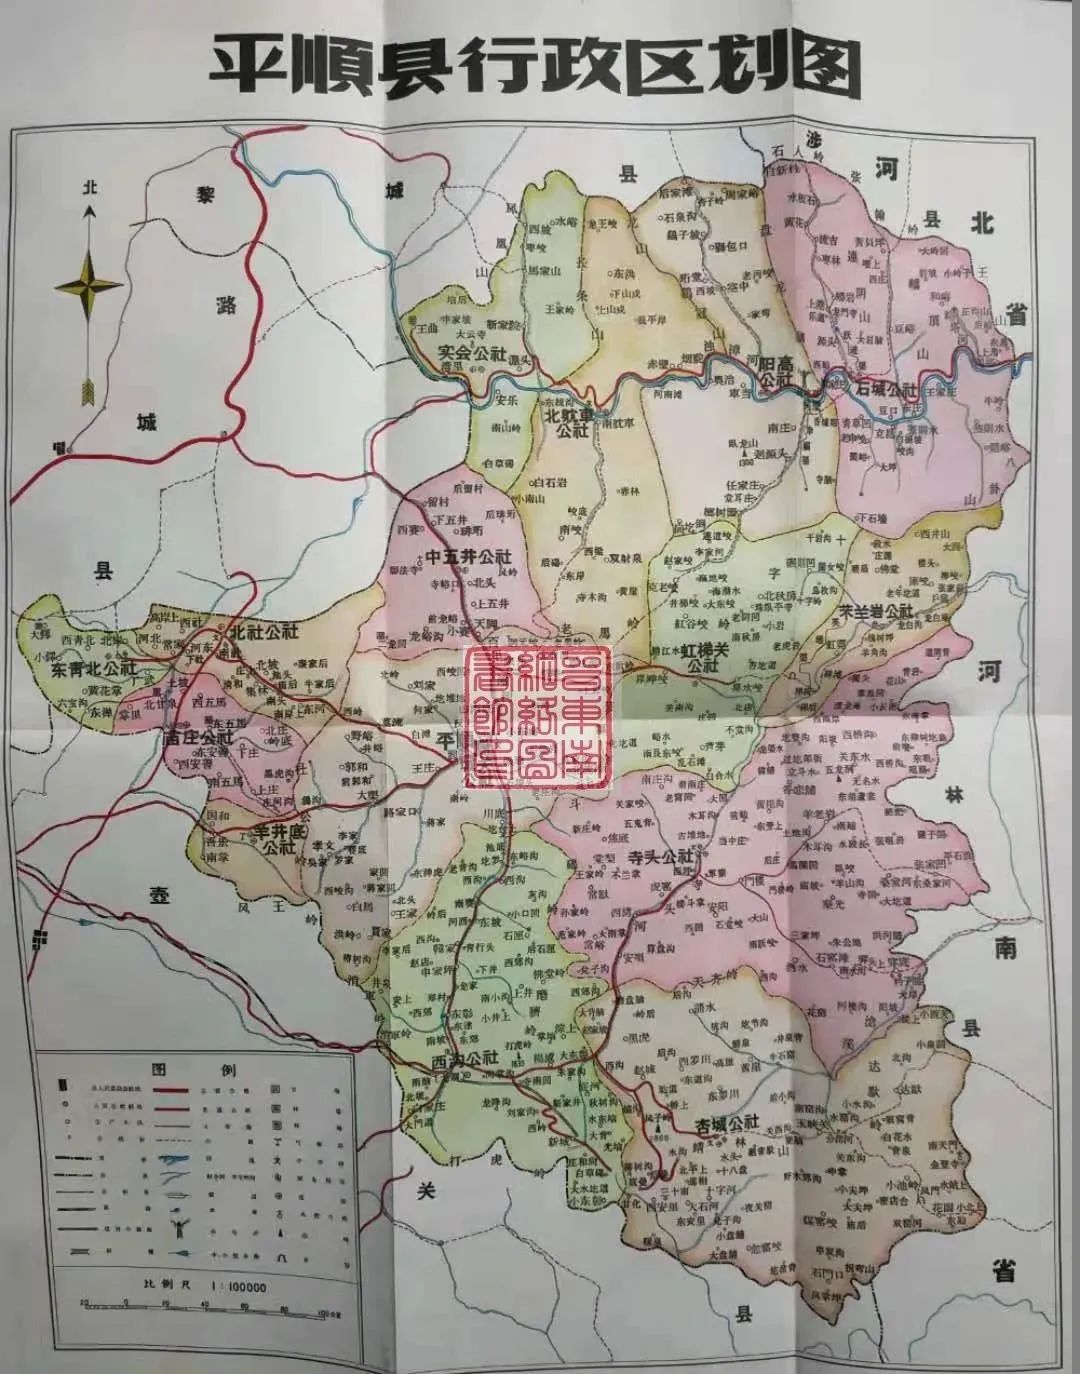 平顺县行政区划图,1961年 返回搜